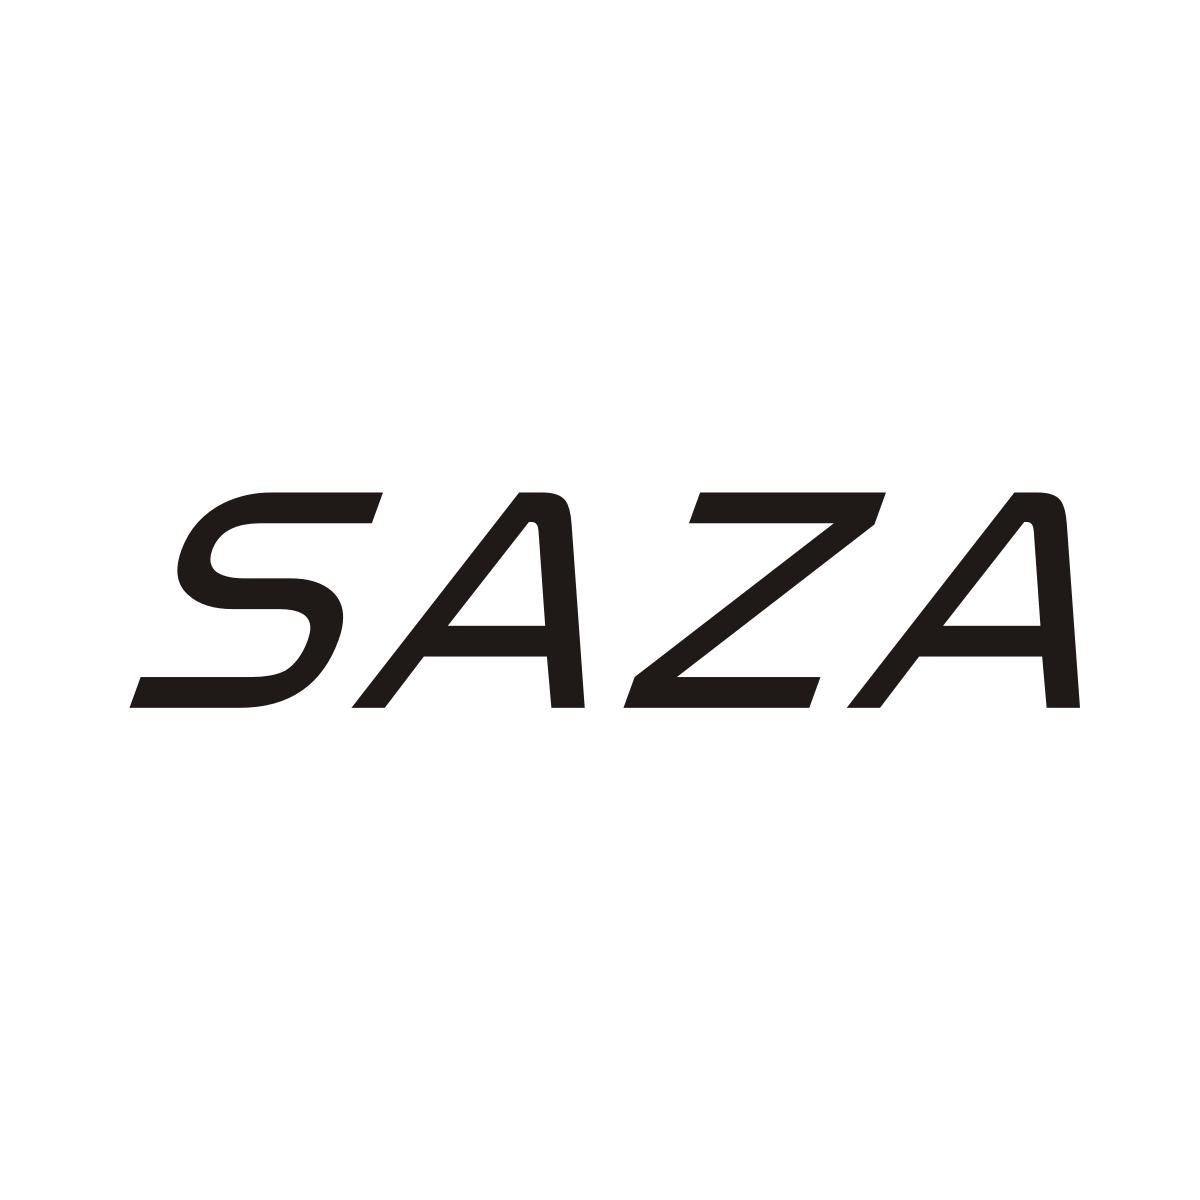 SAZA商标转让